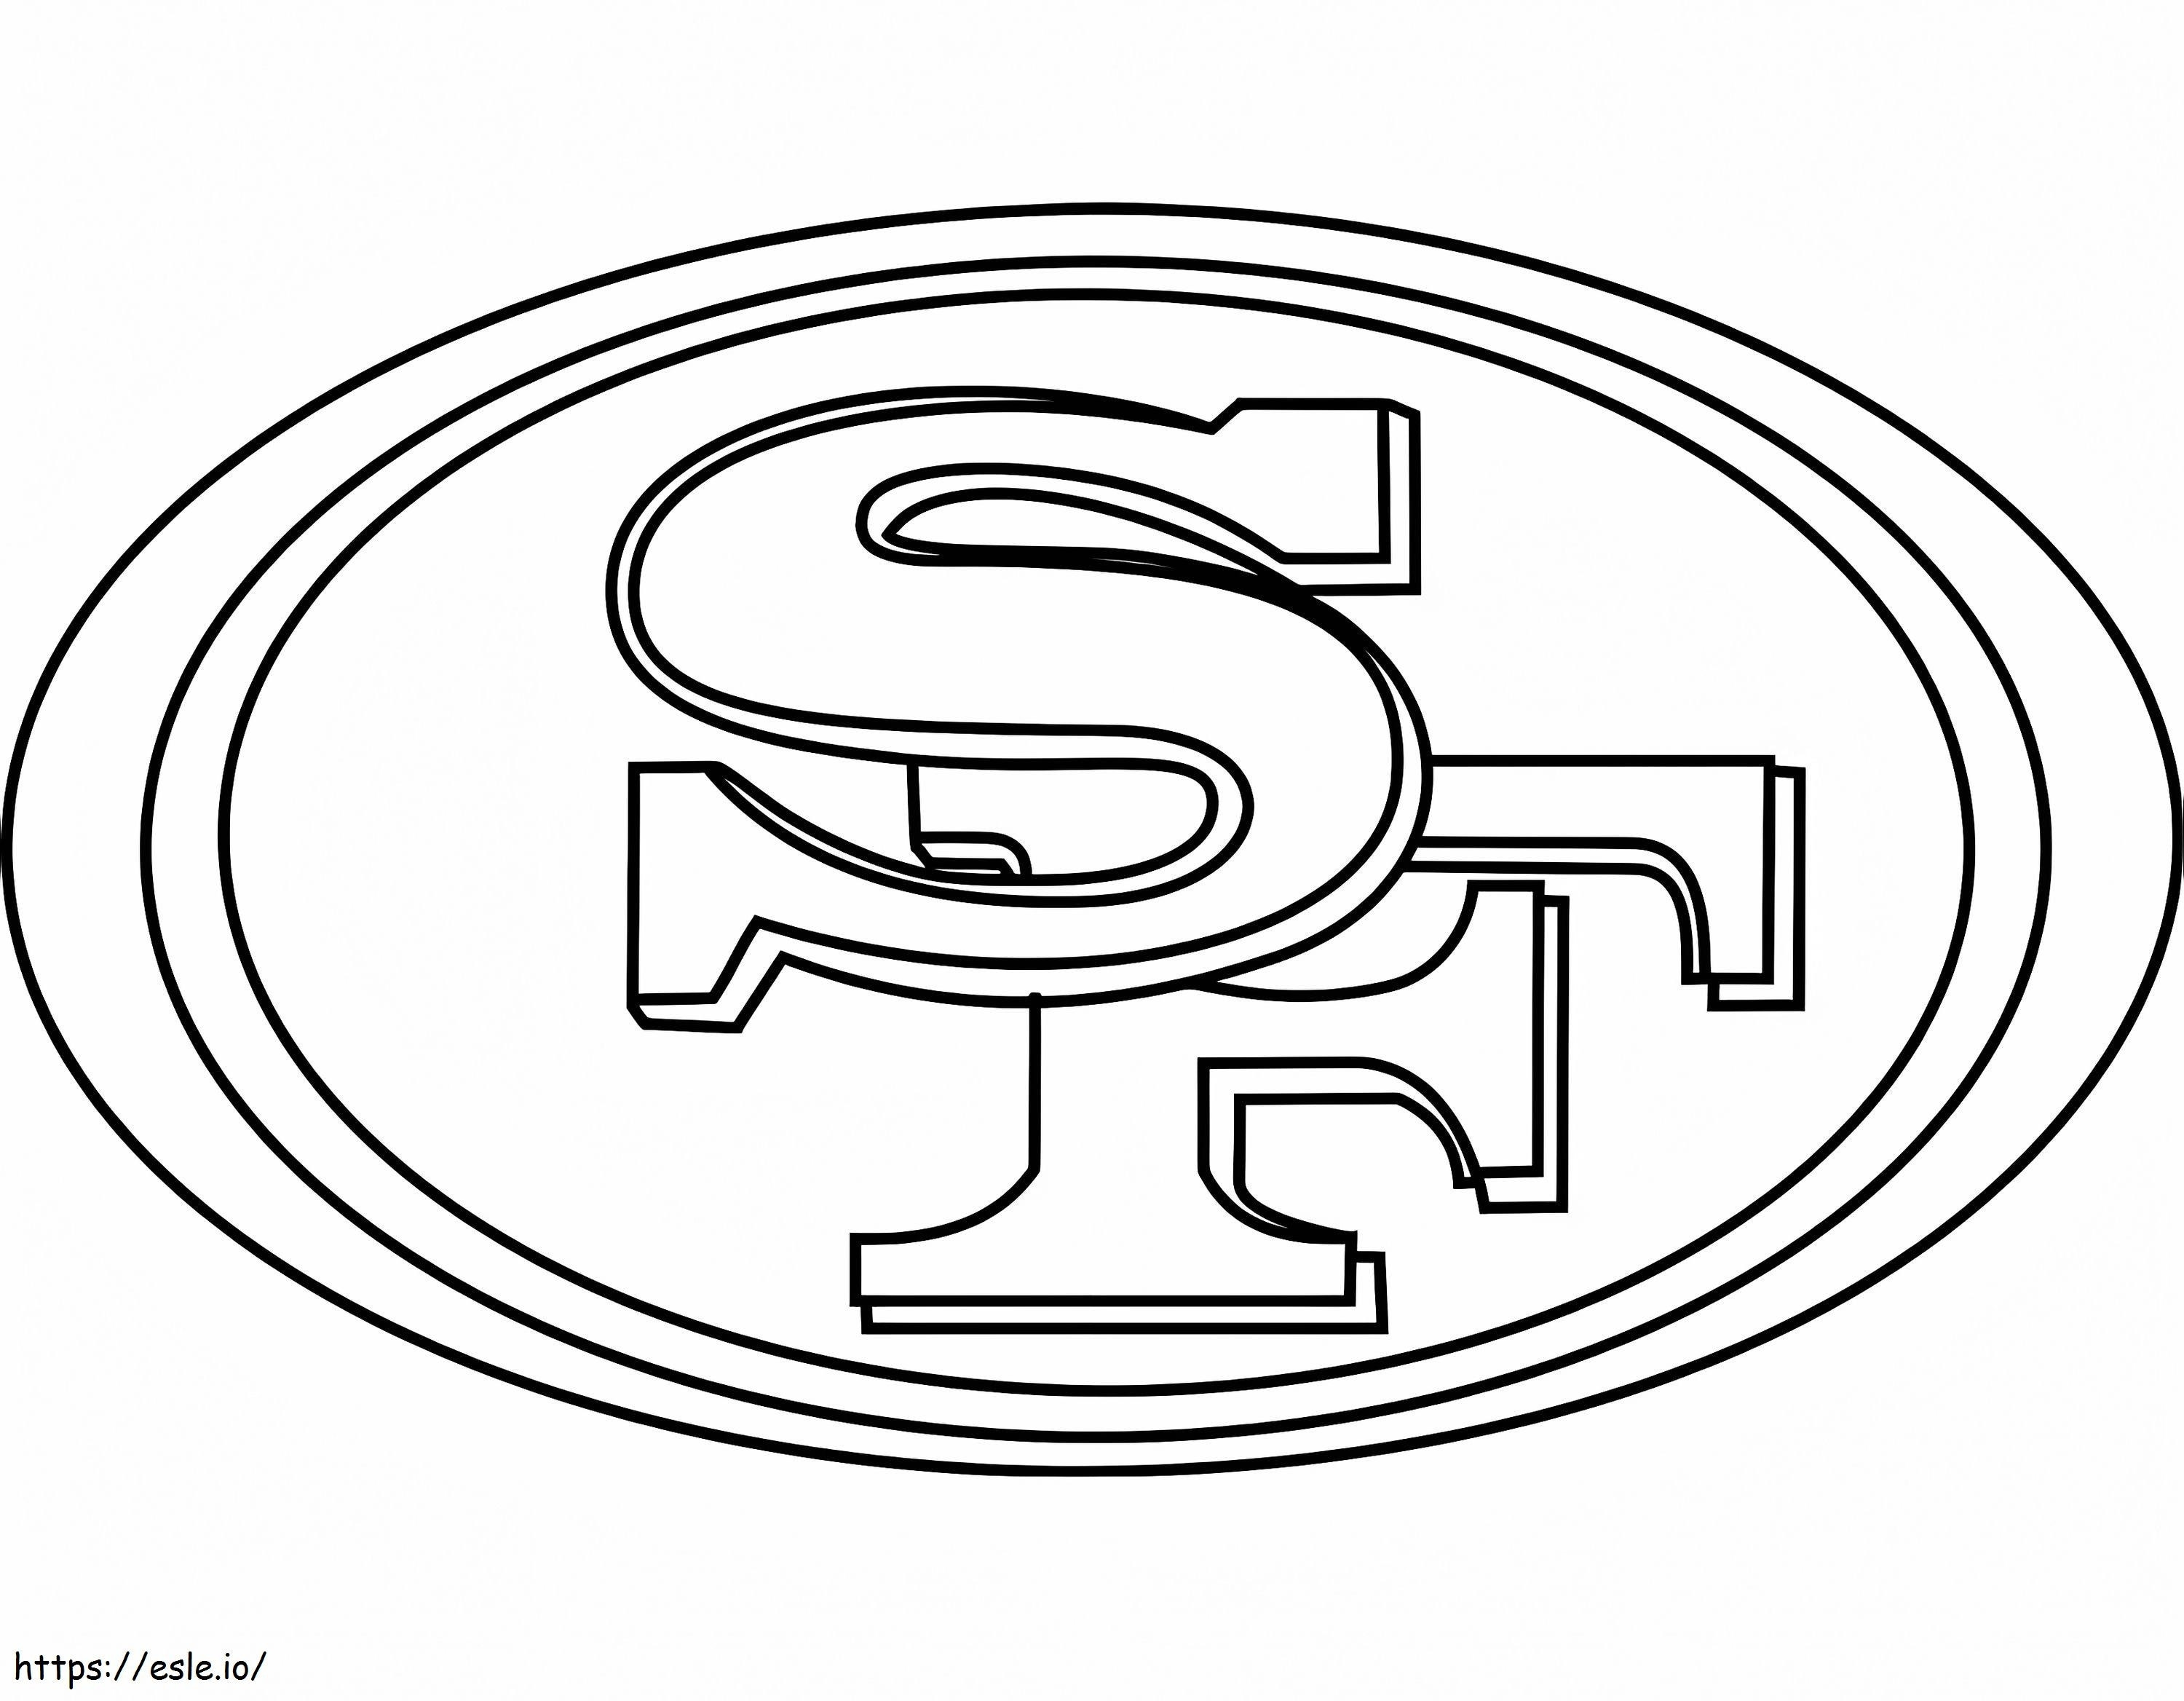 Logotipo de los 49ers de San Francisco para colorear